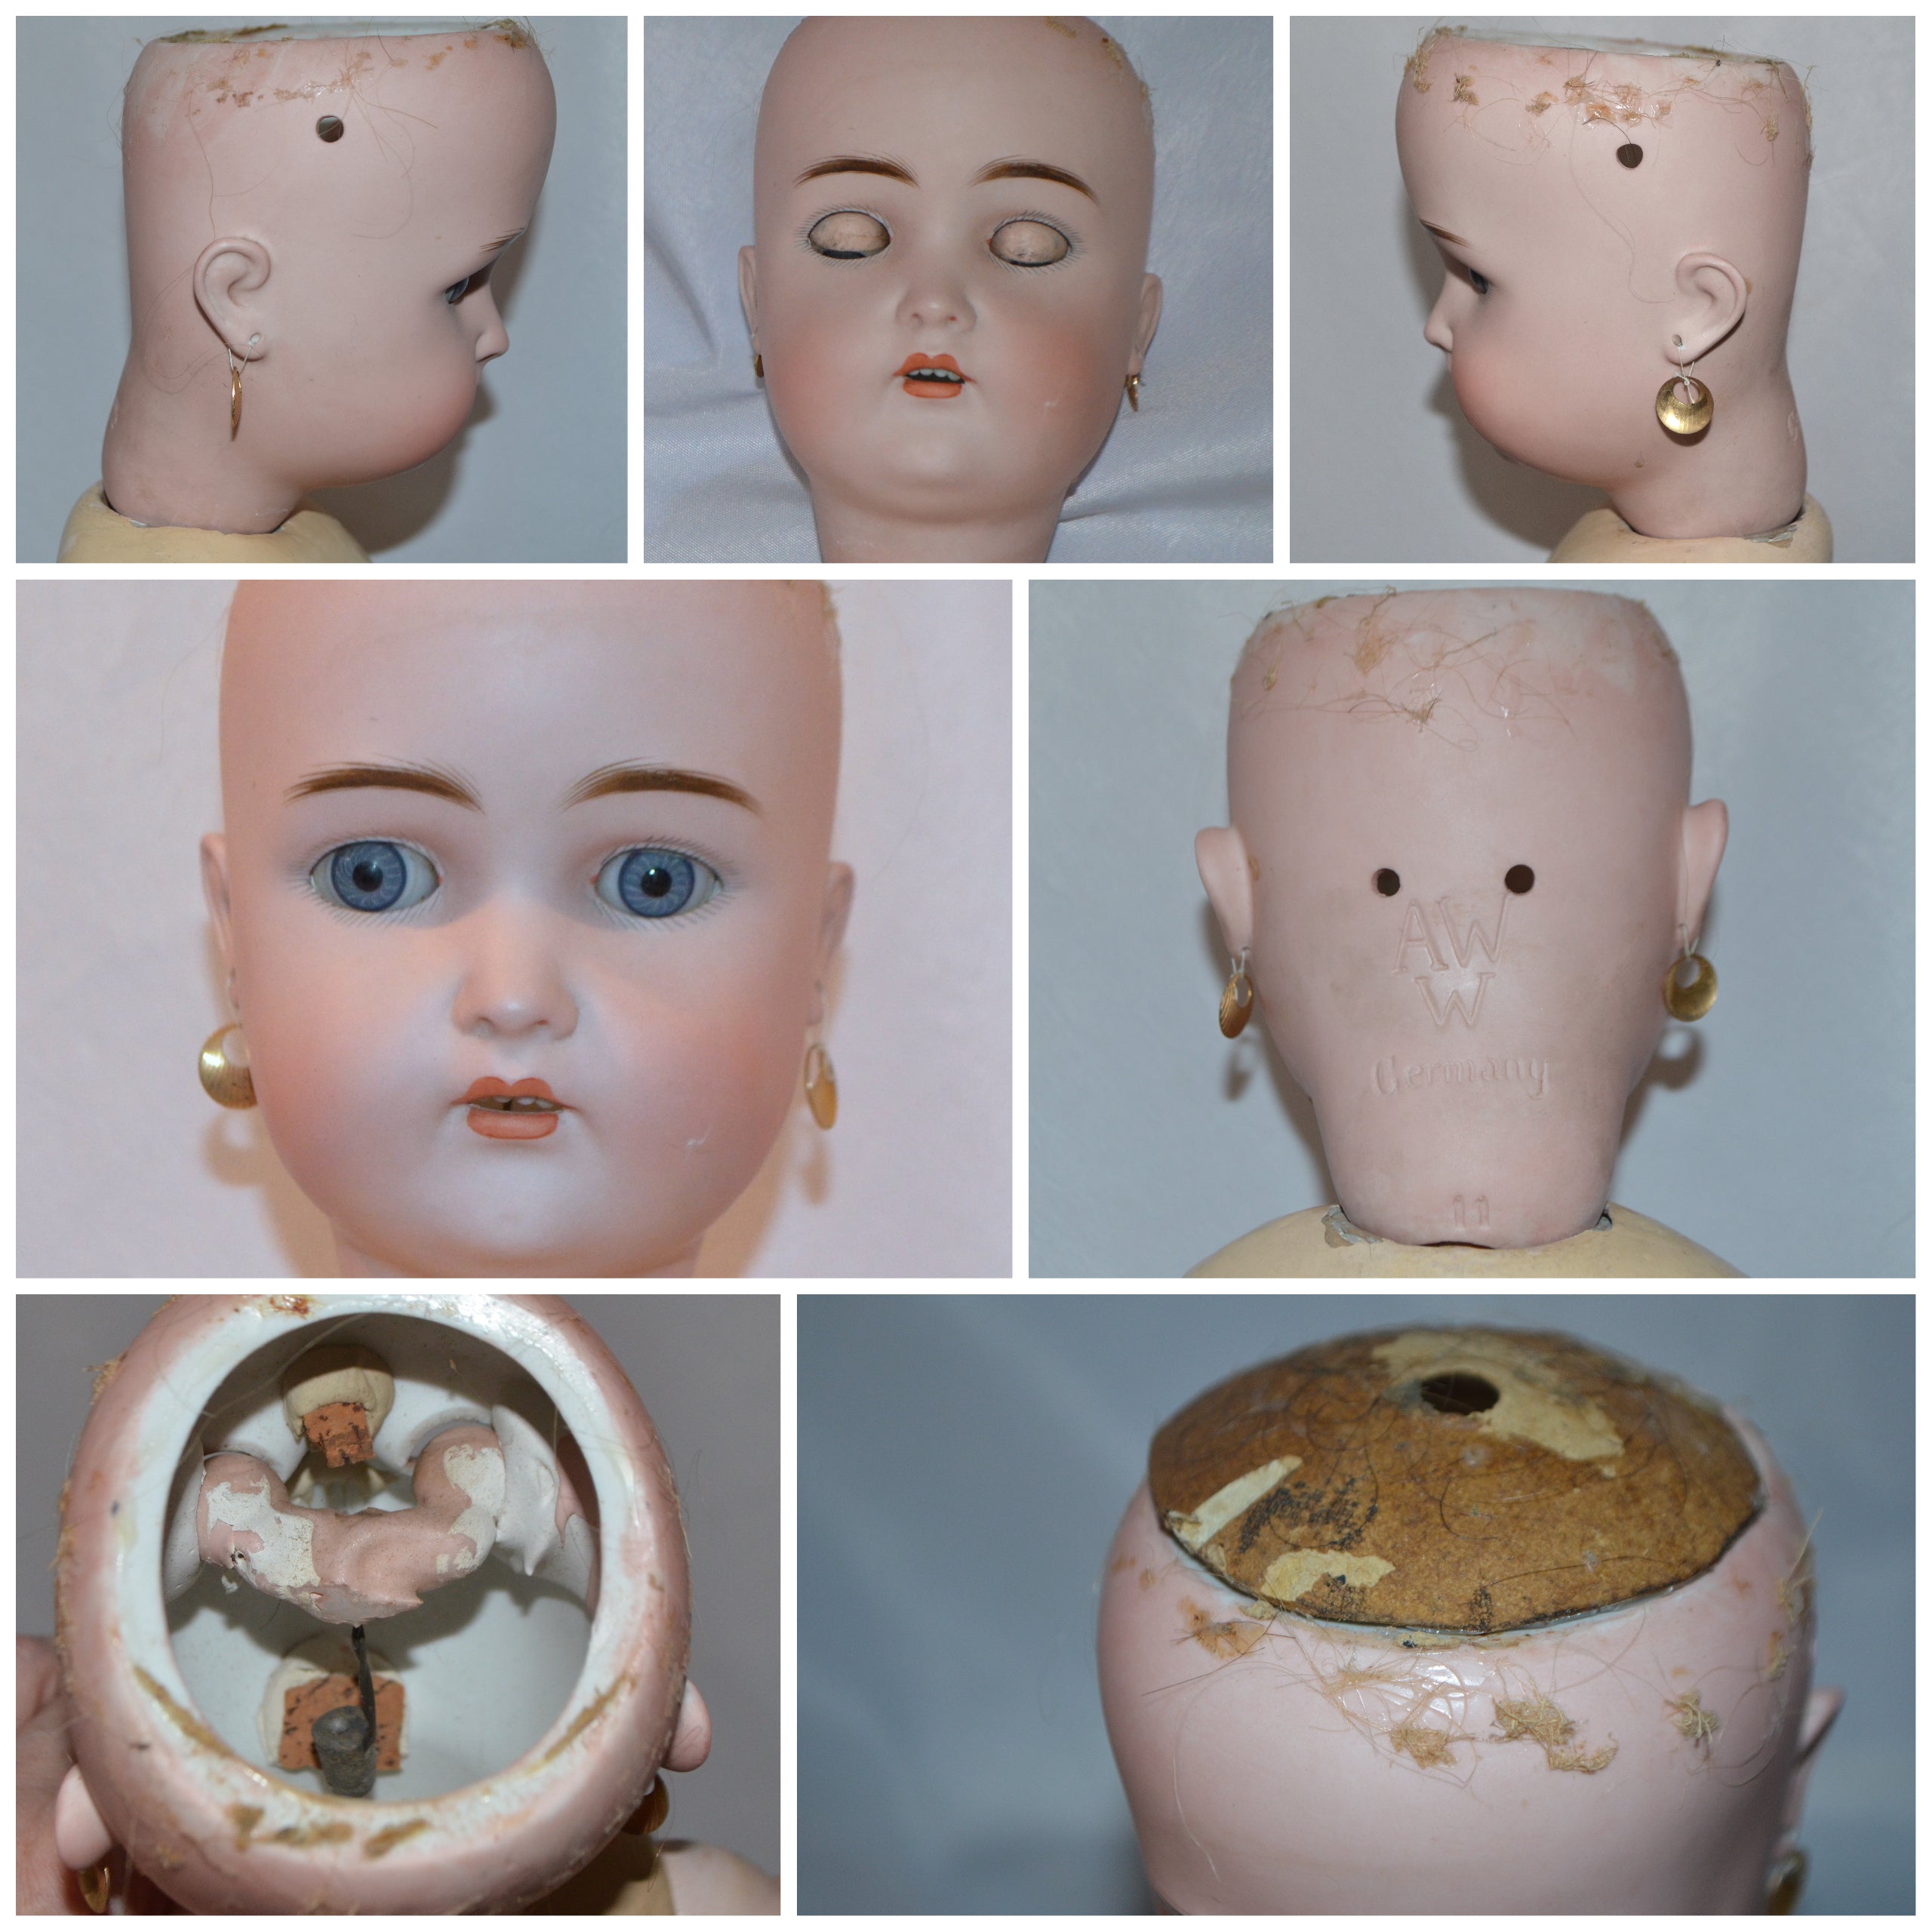 Antique German Doll Bisque Head & Composition Child Adolf Wislizenus A -  ChristiesCurios